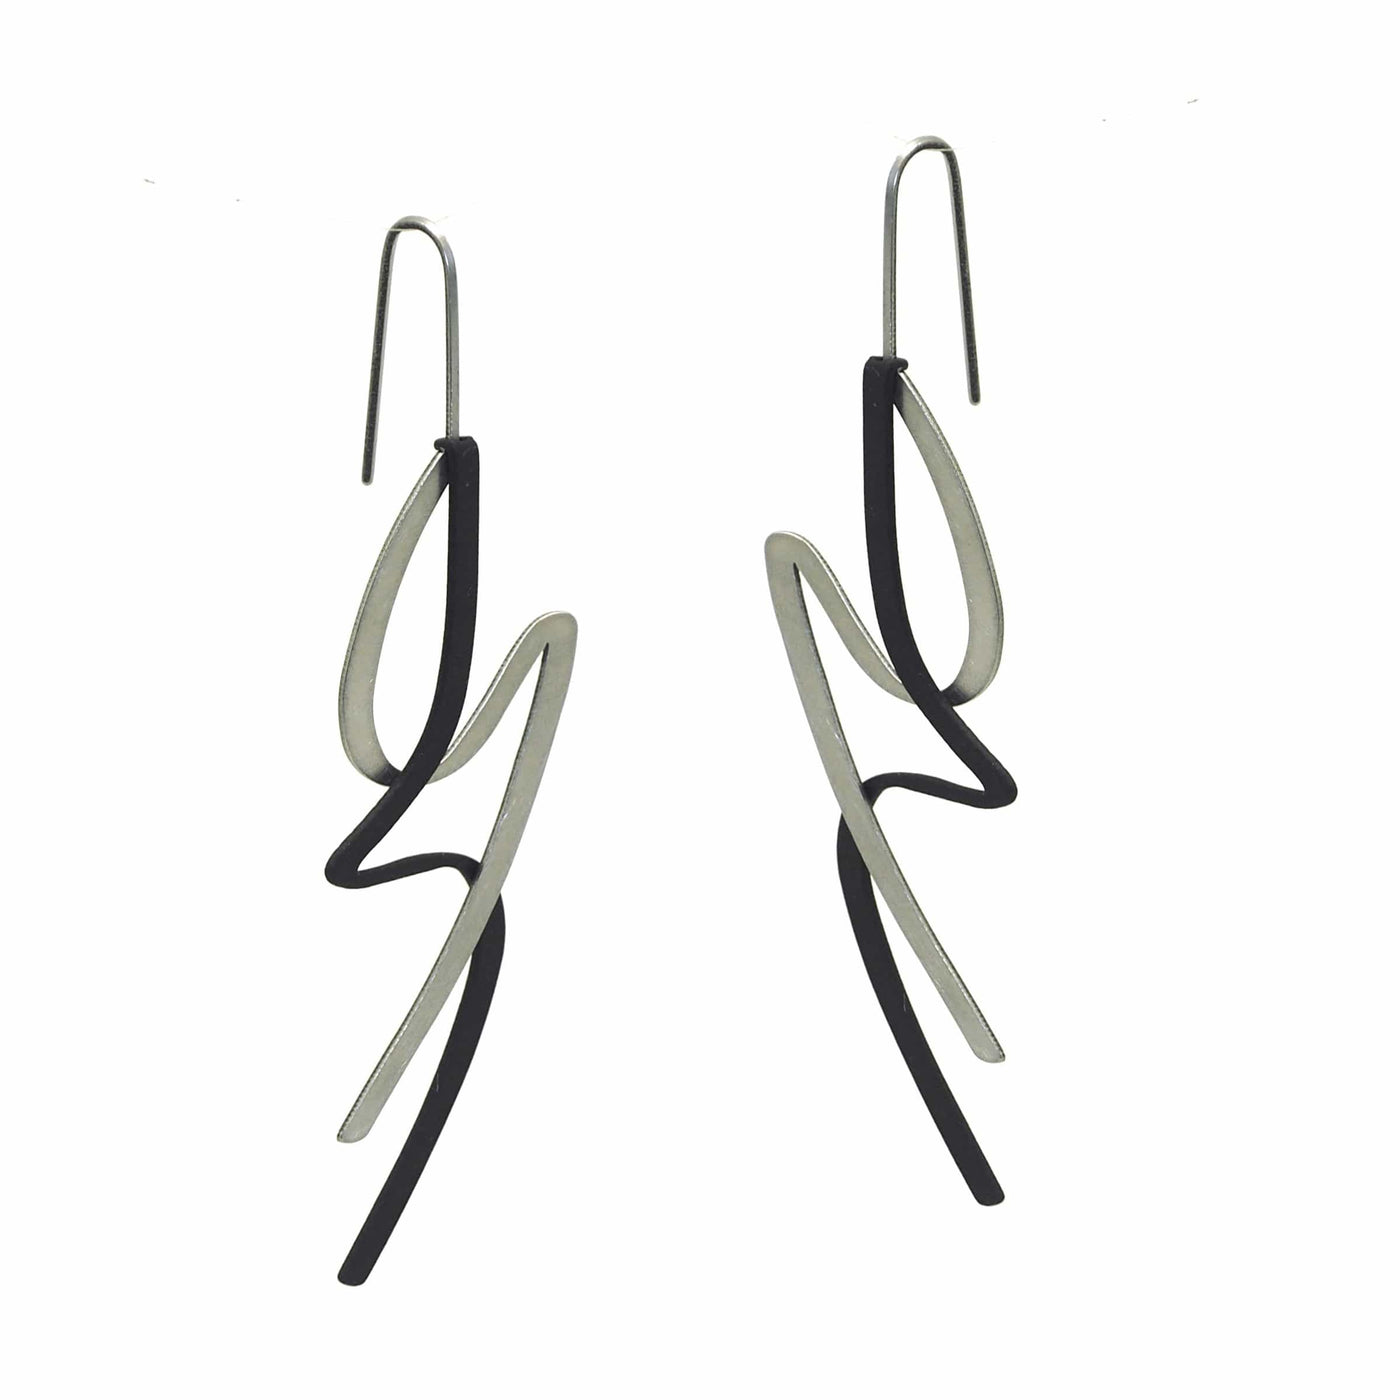 X2 Lithe Earrings - Gold/ Black - inSync design